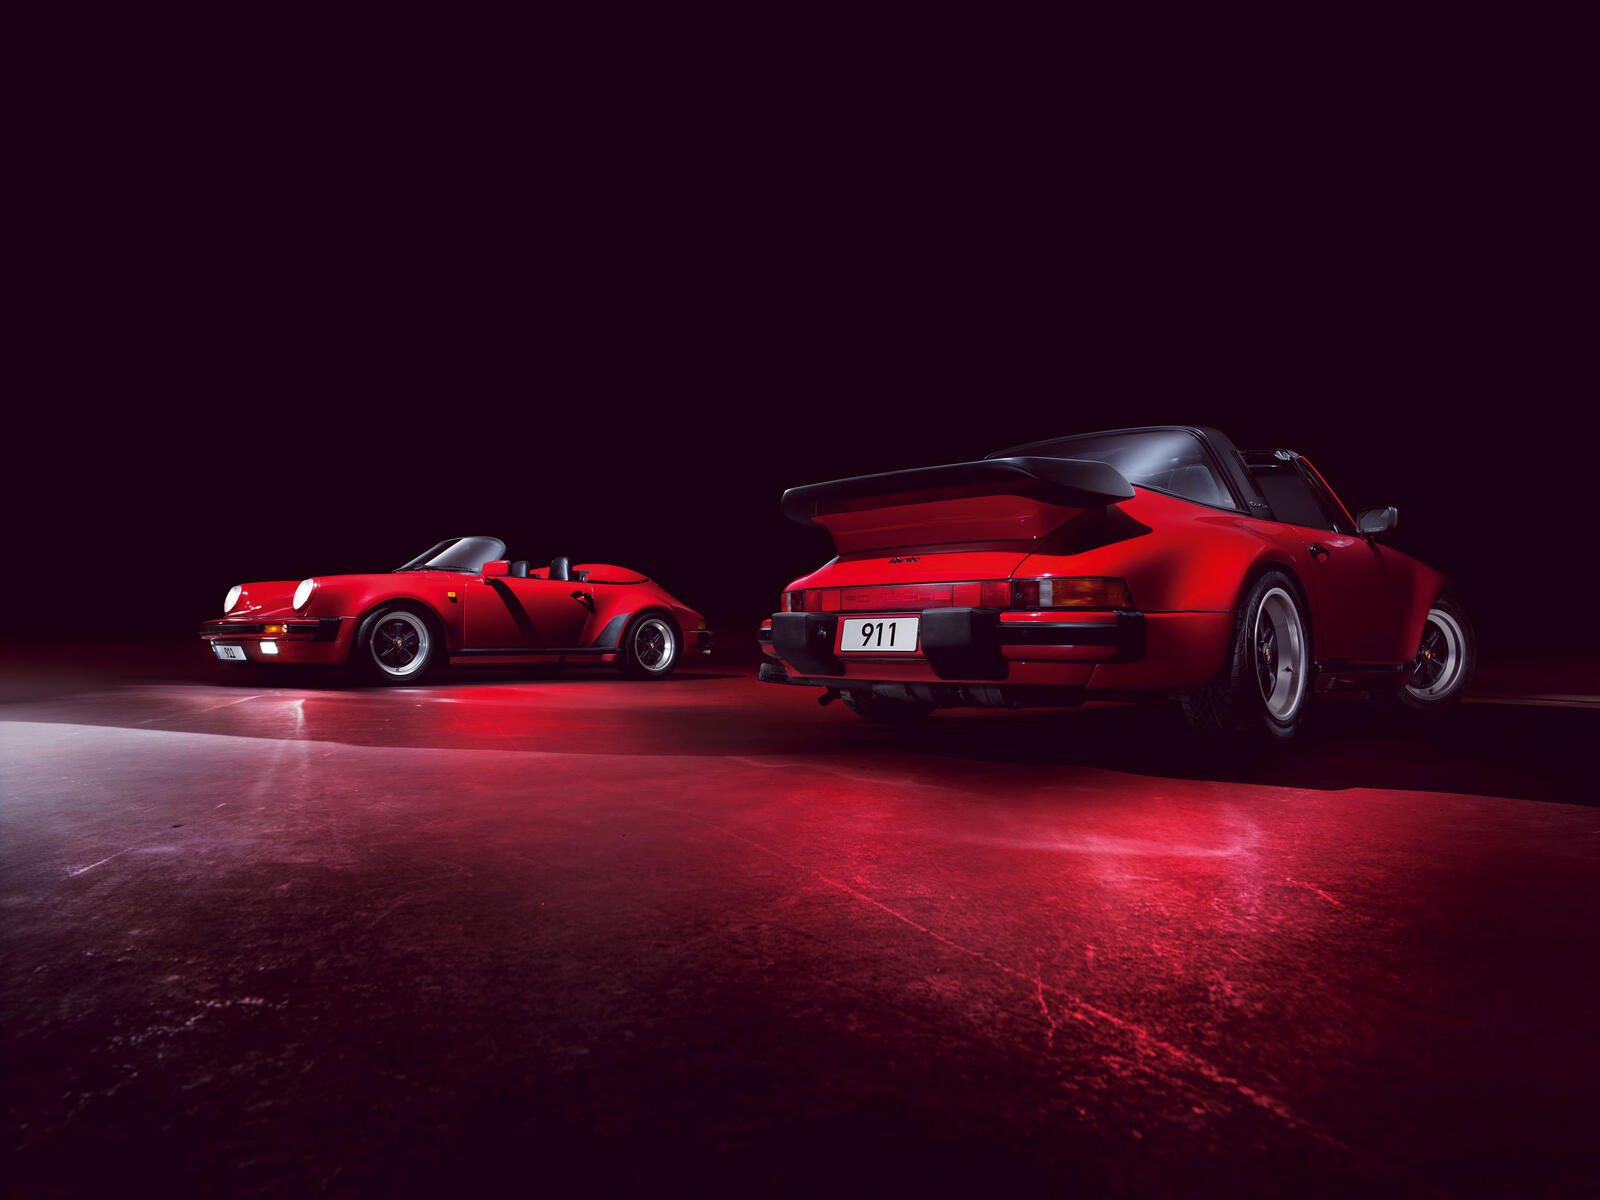 Free photo A red Porsche Targa in a darkened room.